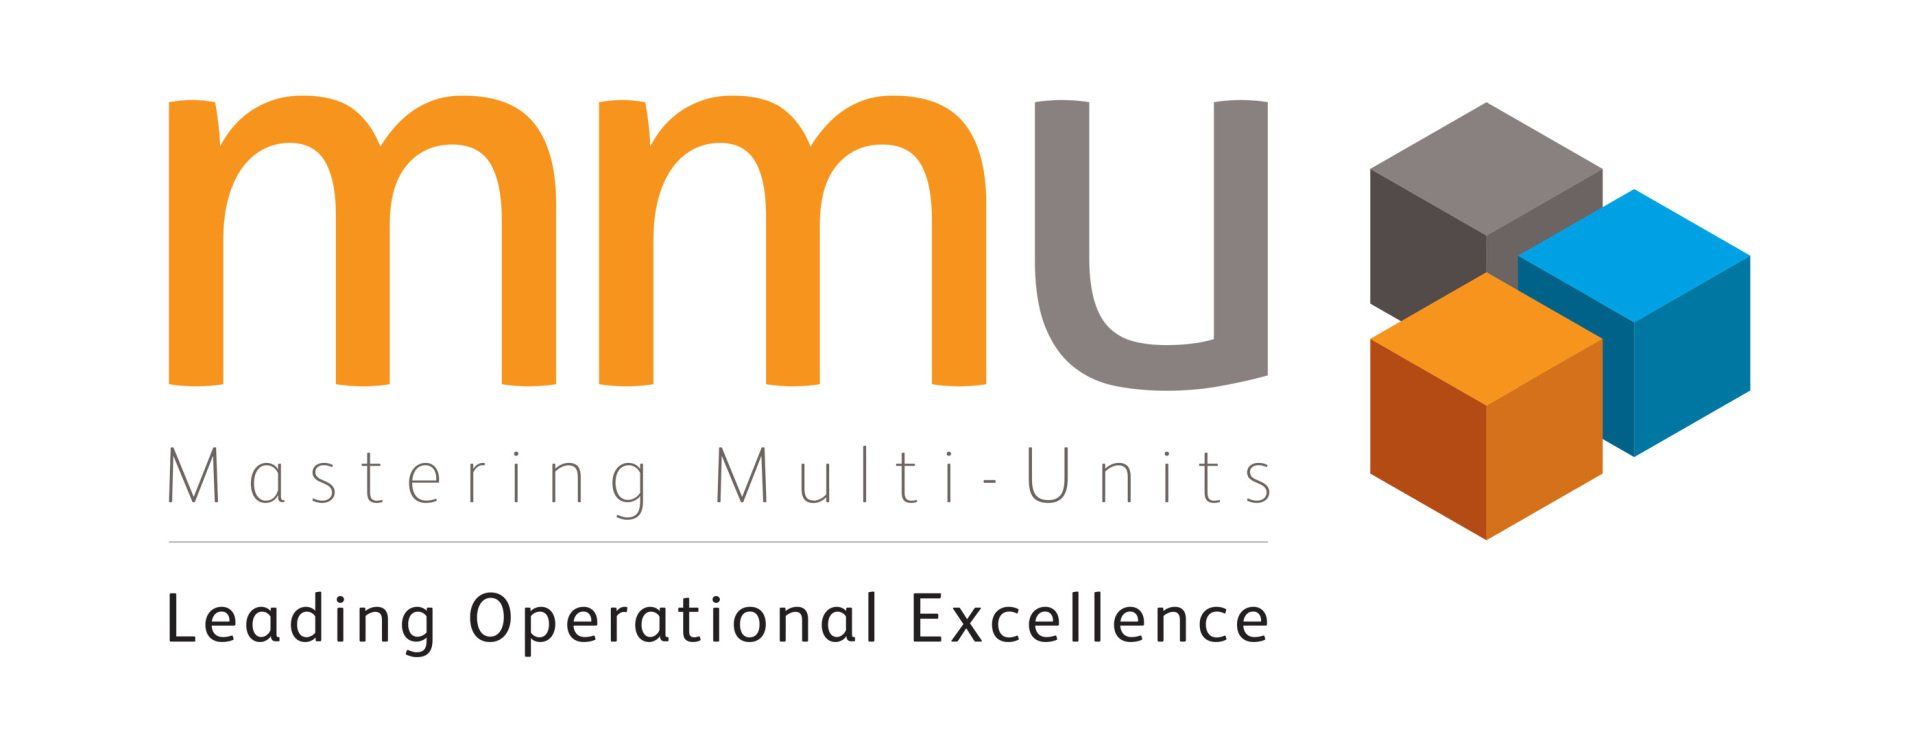 MMU logo design